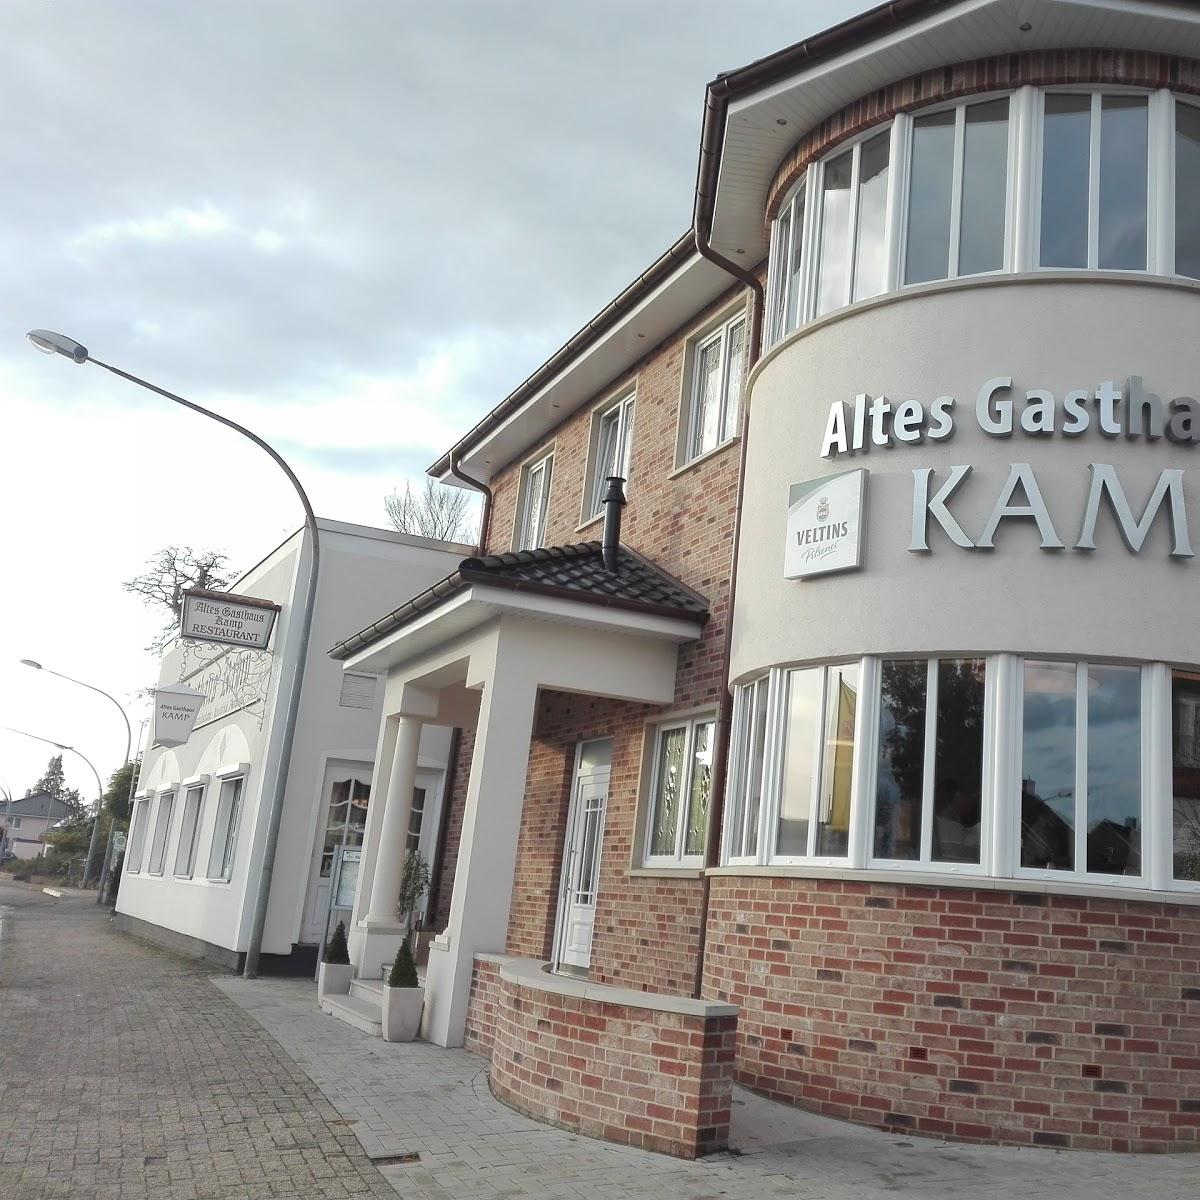 Restaurant "Altes Gasthaus Kamp" in  Meppen